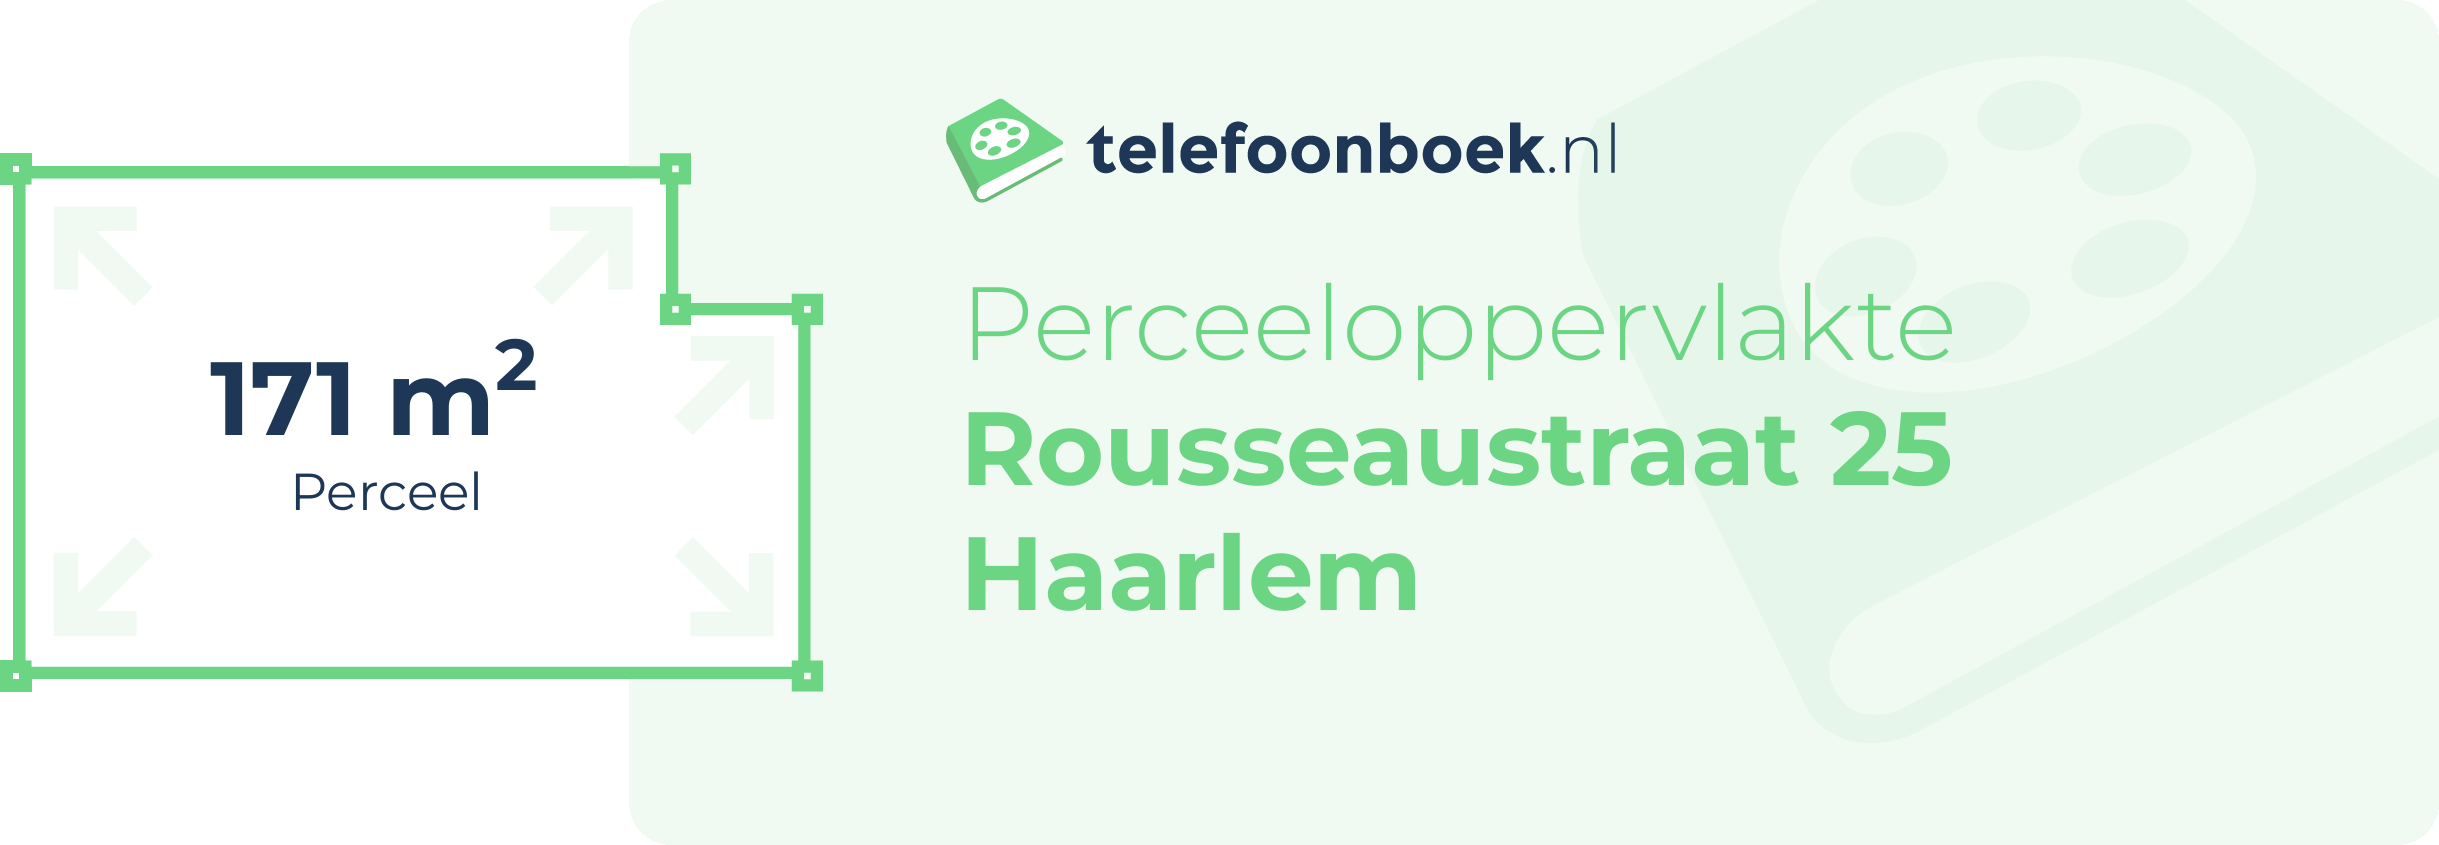 Perceeloppervlakte Rousseaustraat 25 Haarlem